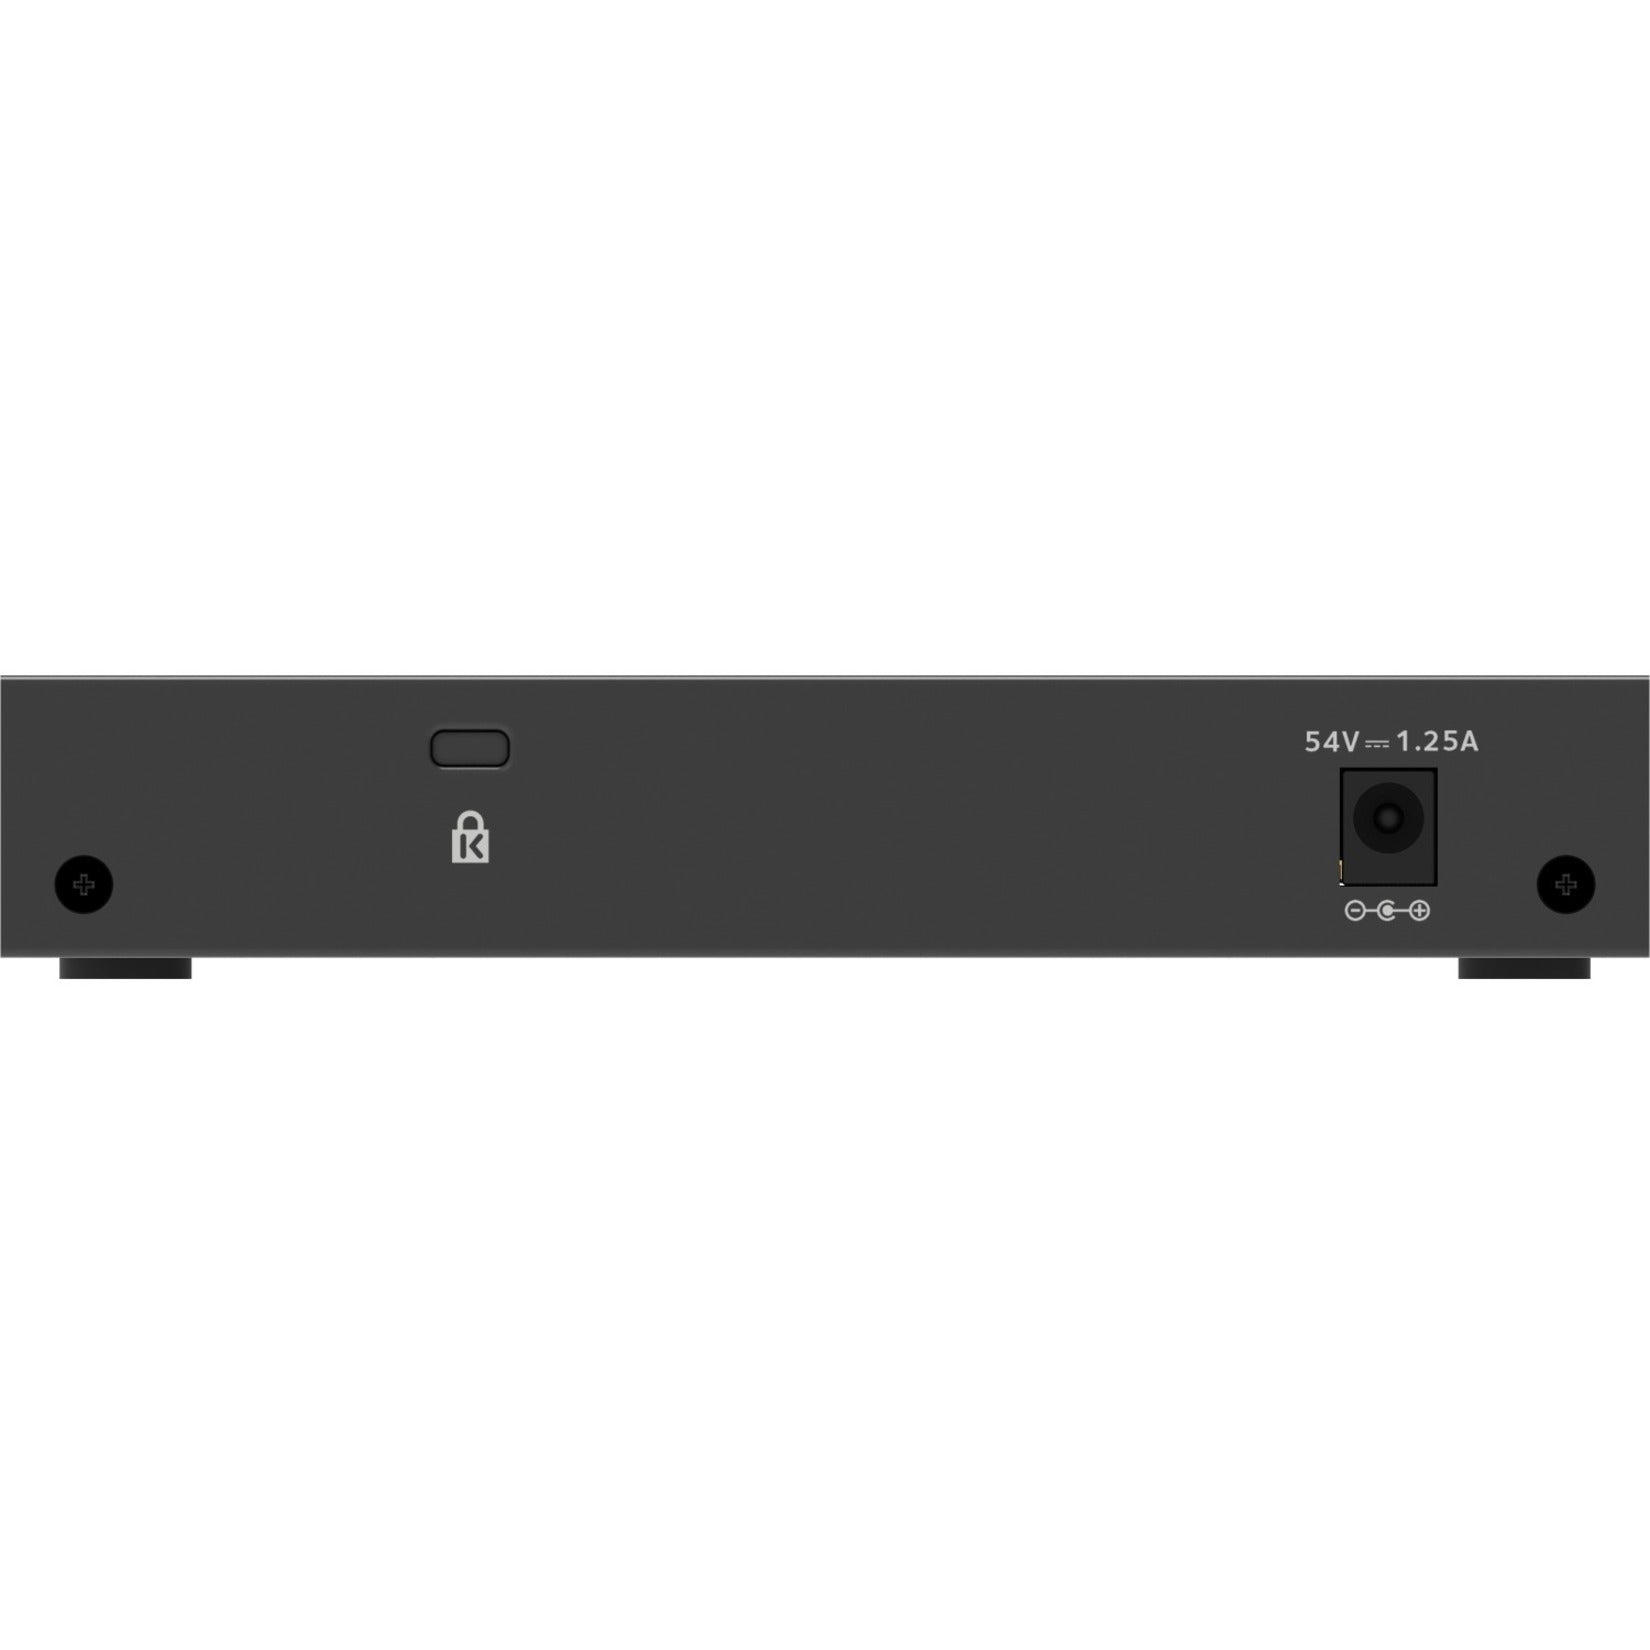 Marca: Netgear Switch Gestionado Inteligente Plus PoE+ Ethernet Gigabit de 8 Puertos GS308EP-100NAS de Netgear Garantía de 5 Años Presupuesto de PoE de 62W.